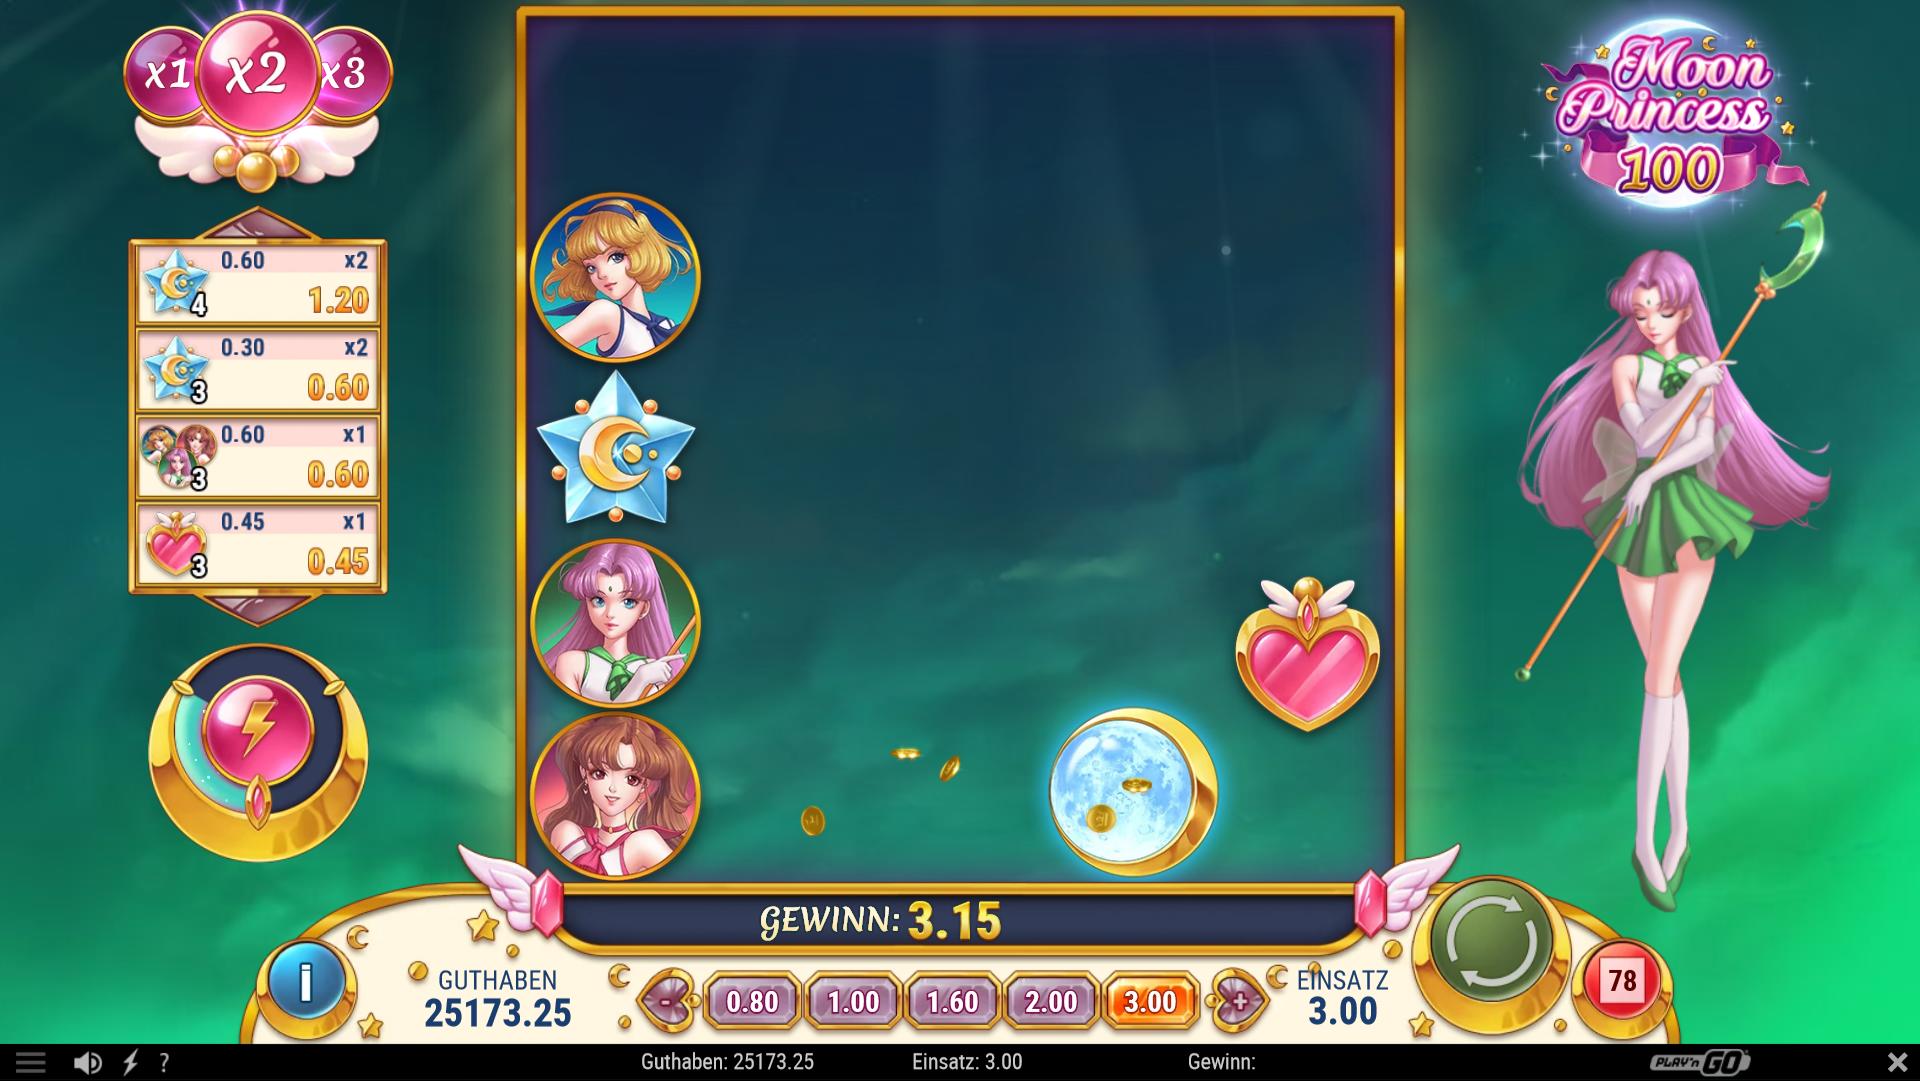 Das Moon Princess 100 Spiel